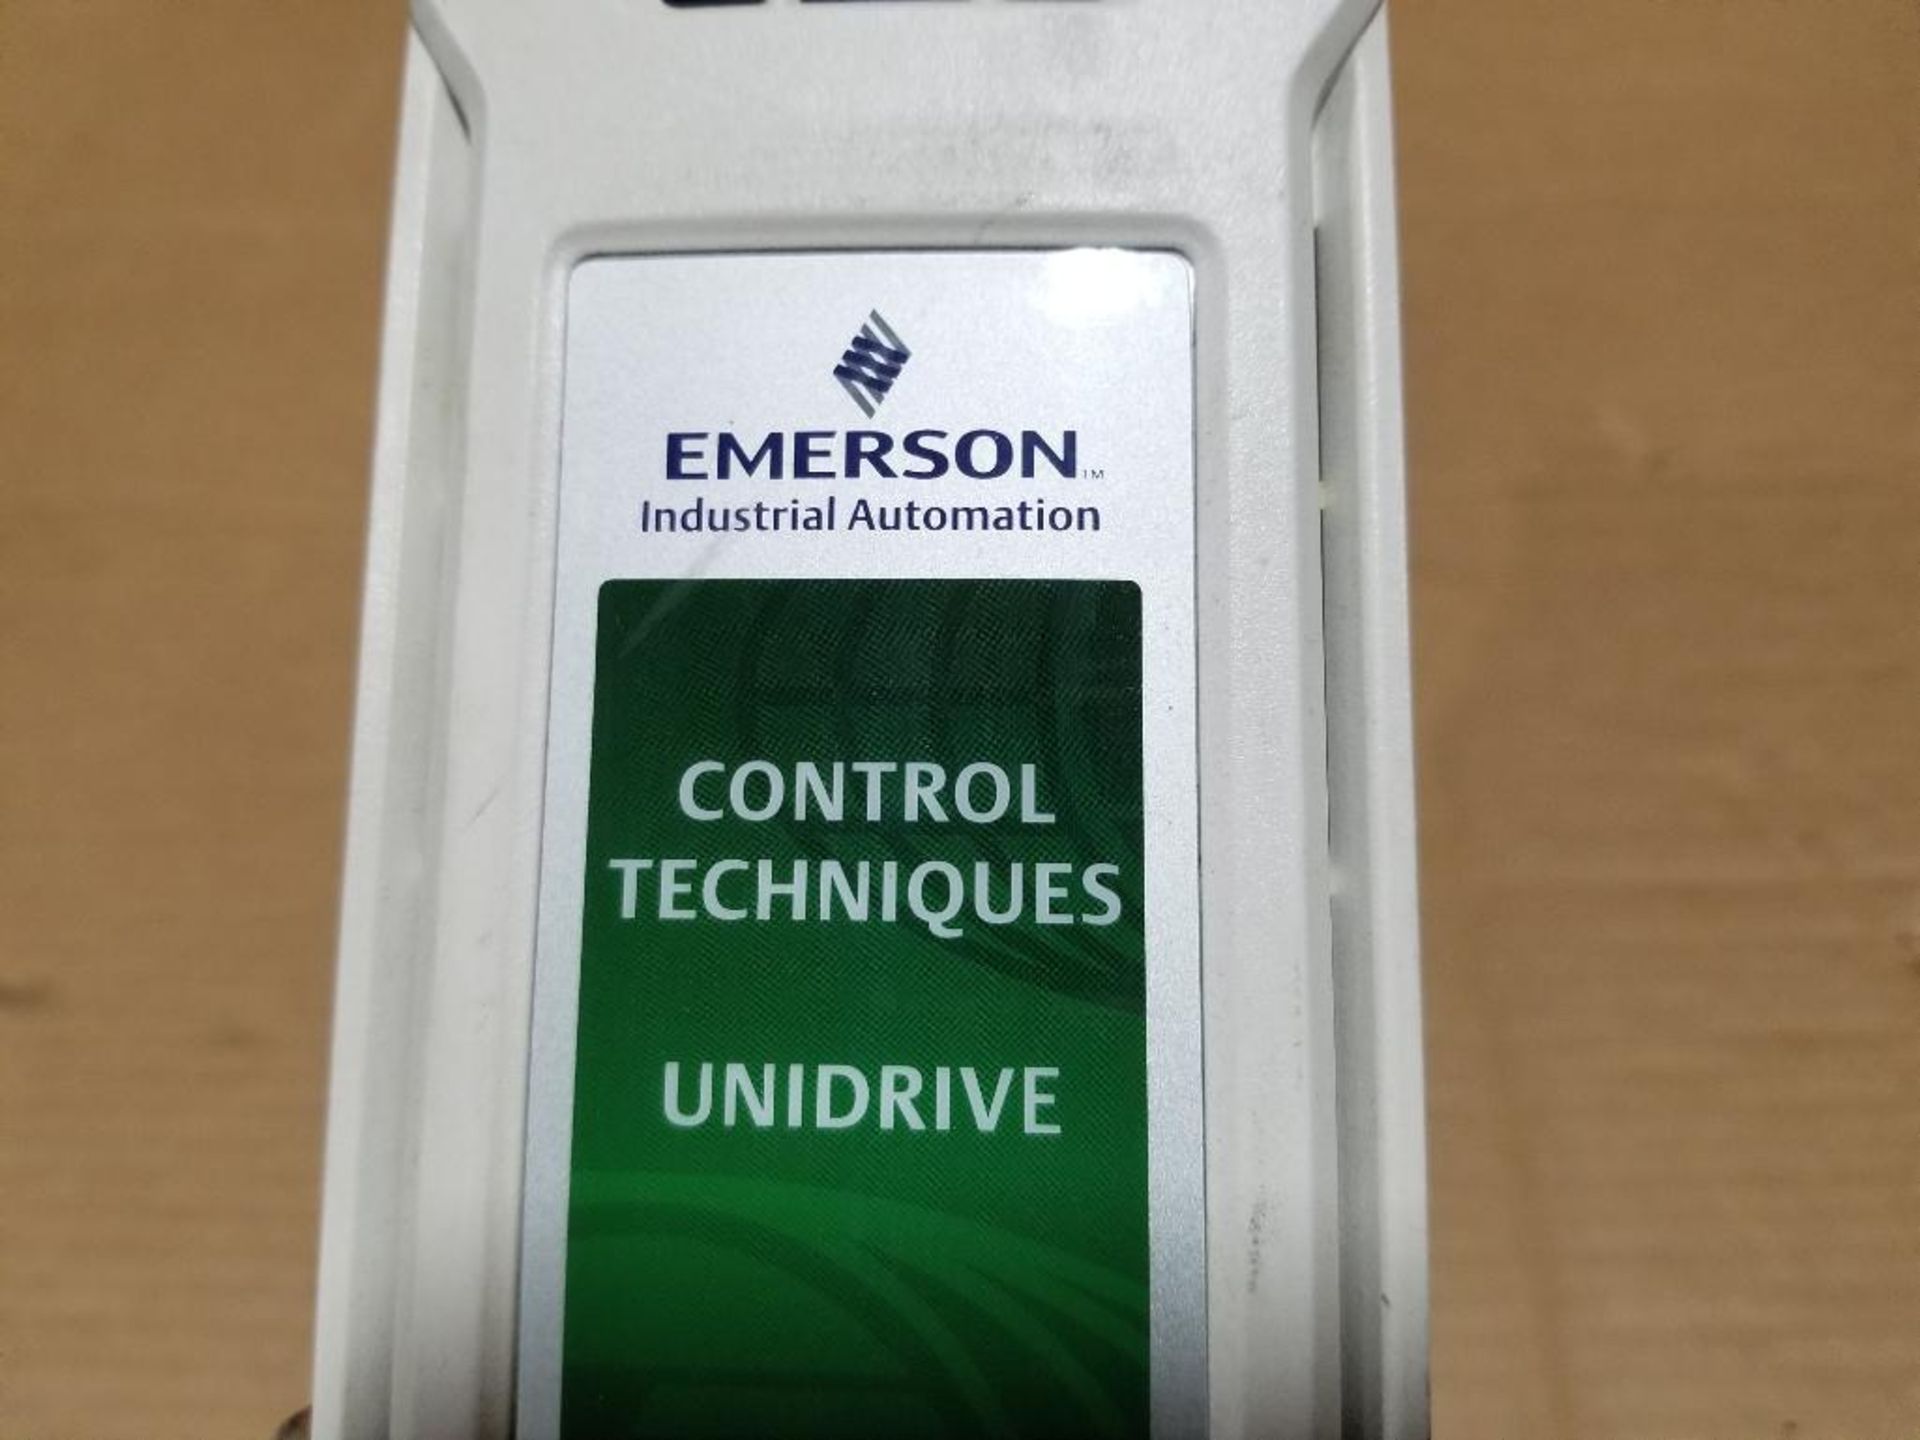 Emerson Control Techniques Unidrive M701. P/N M701-032 00106. - Image 4 of 5